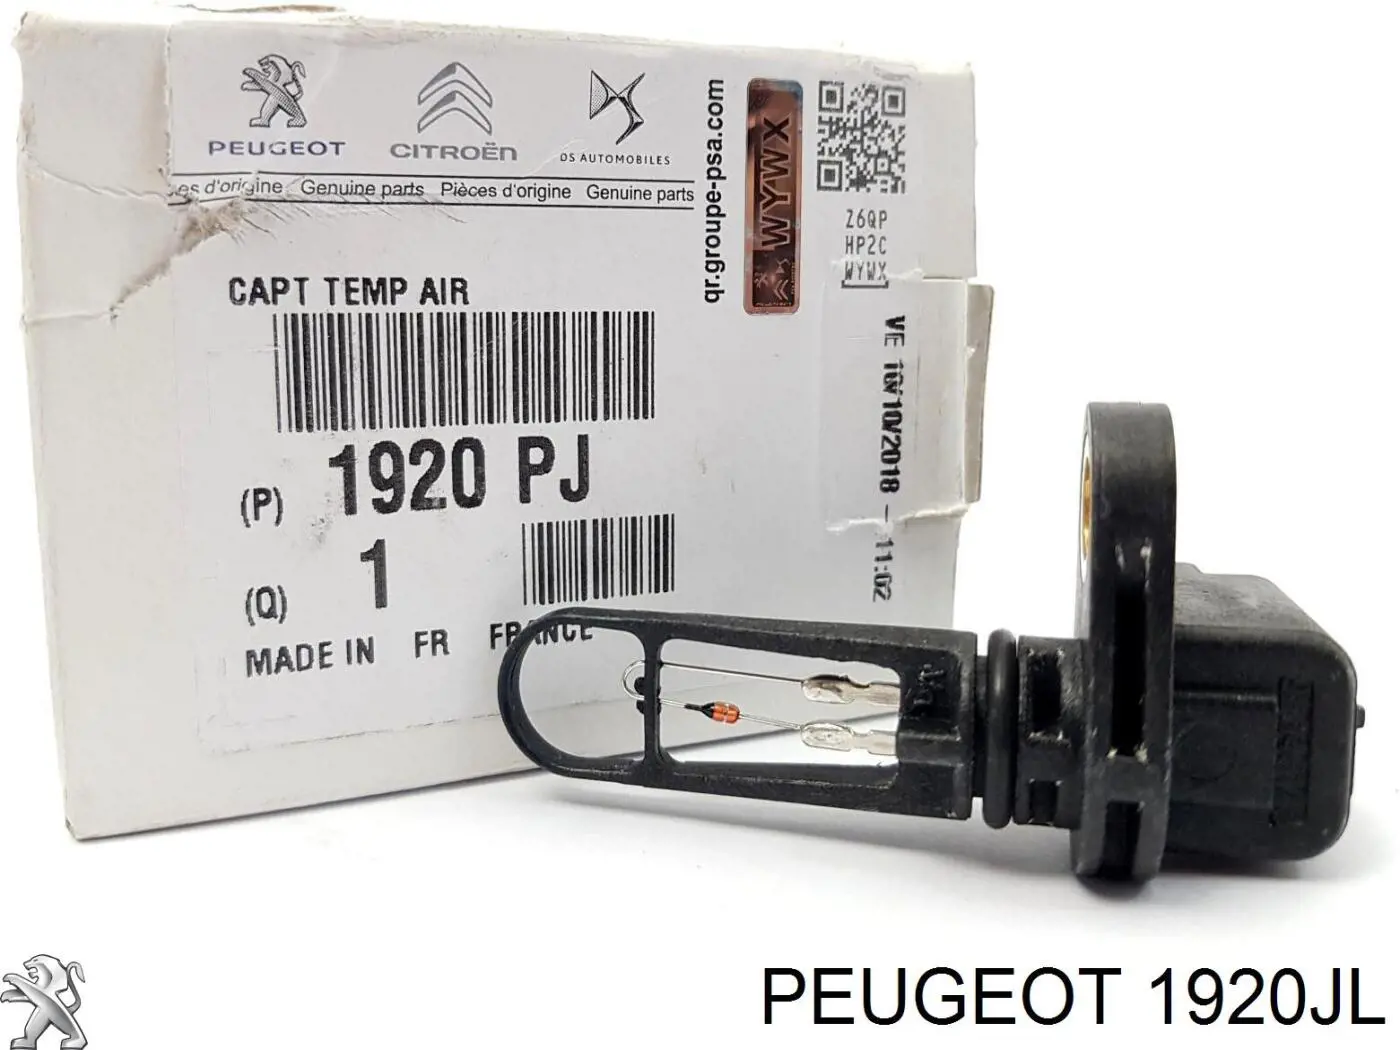 1920JL Peugeot/Citroen датчик температуры воздушной смеси